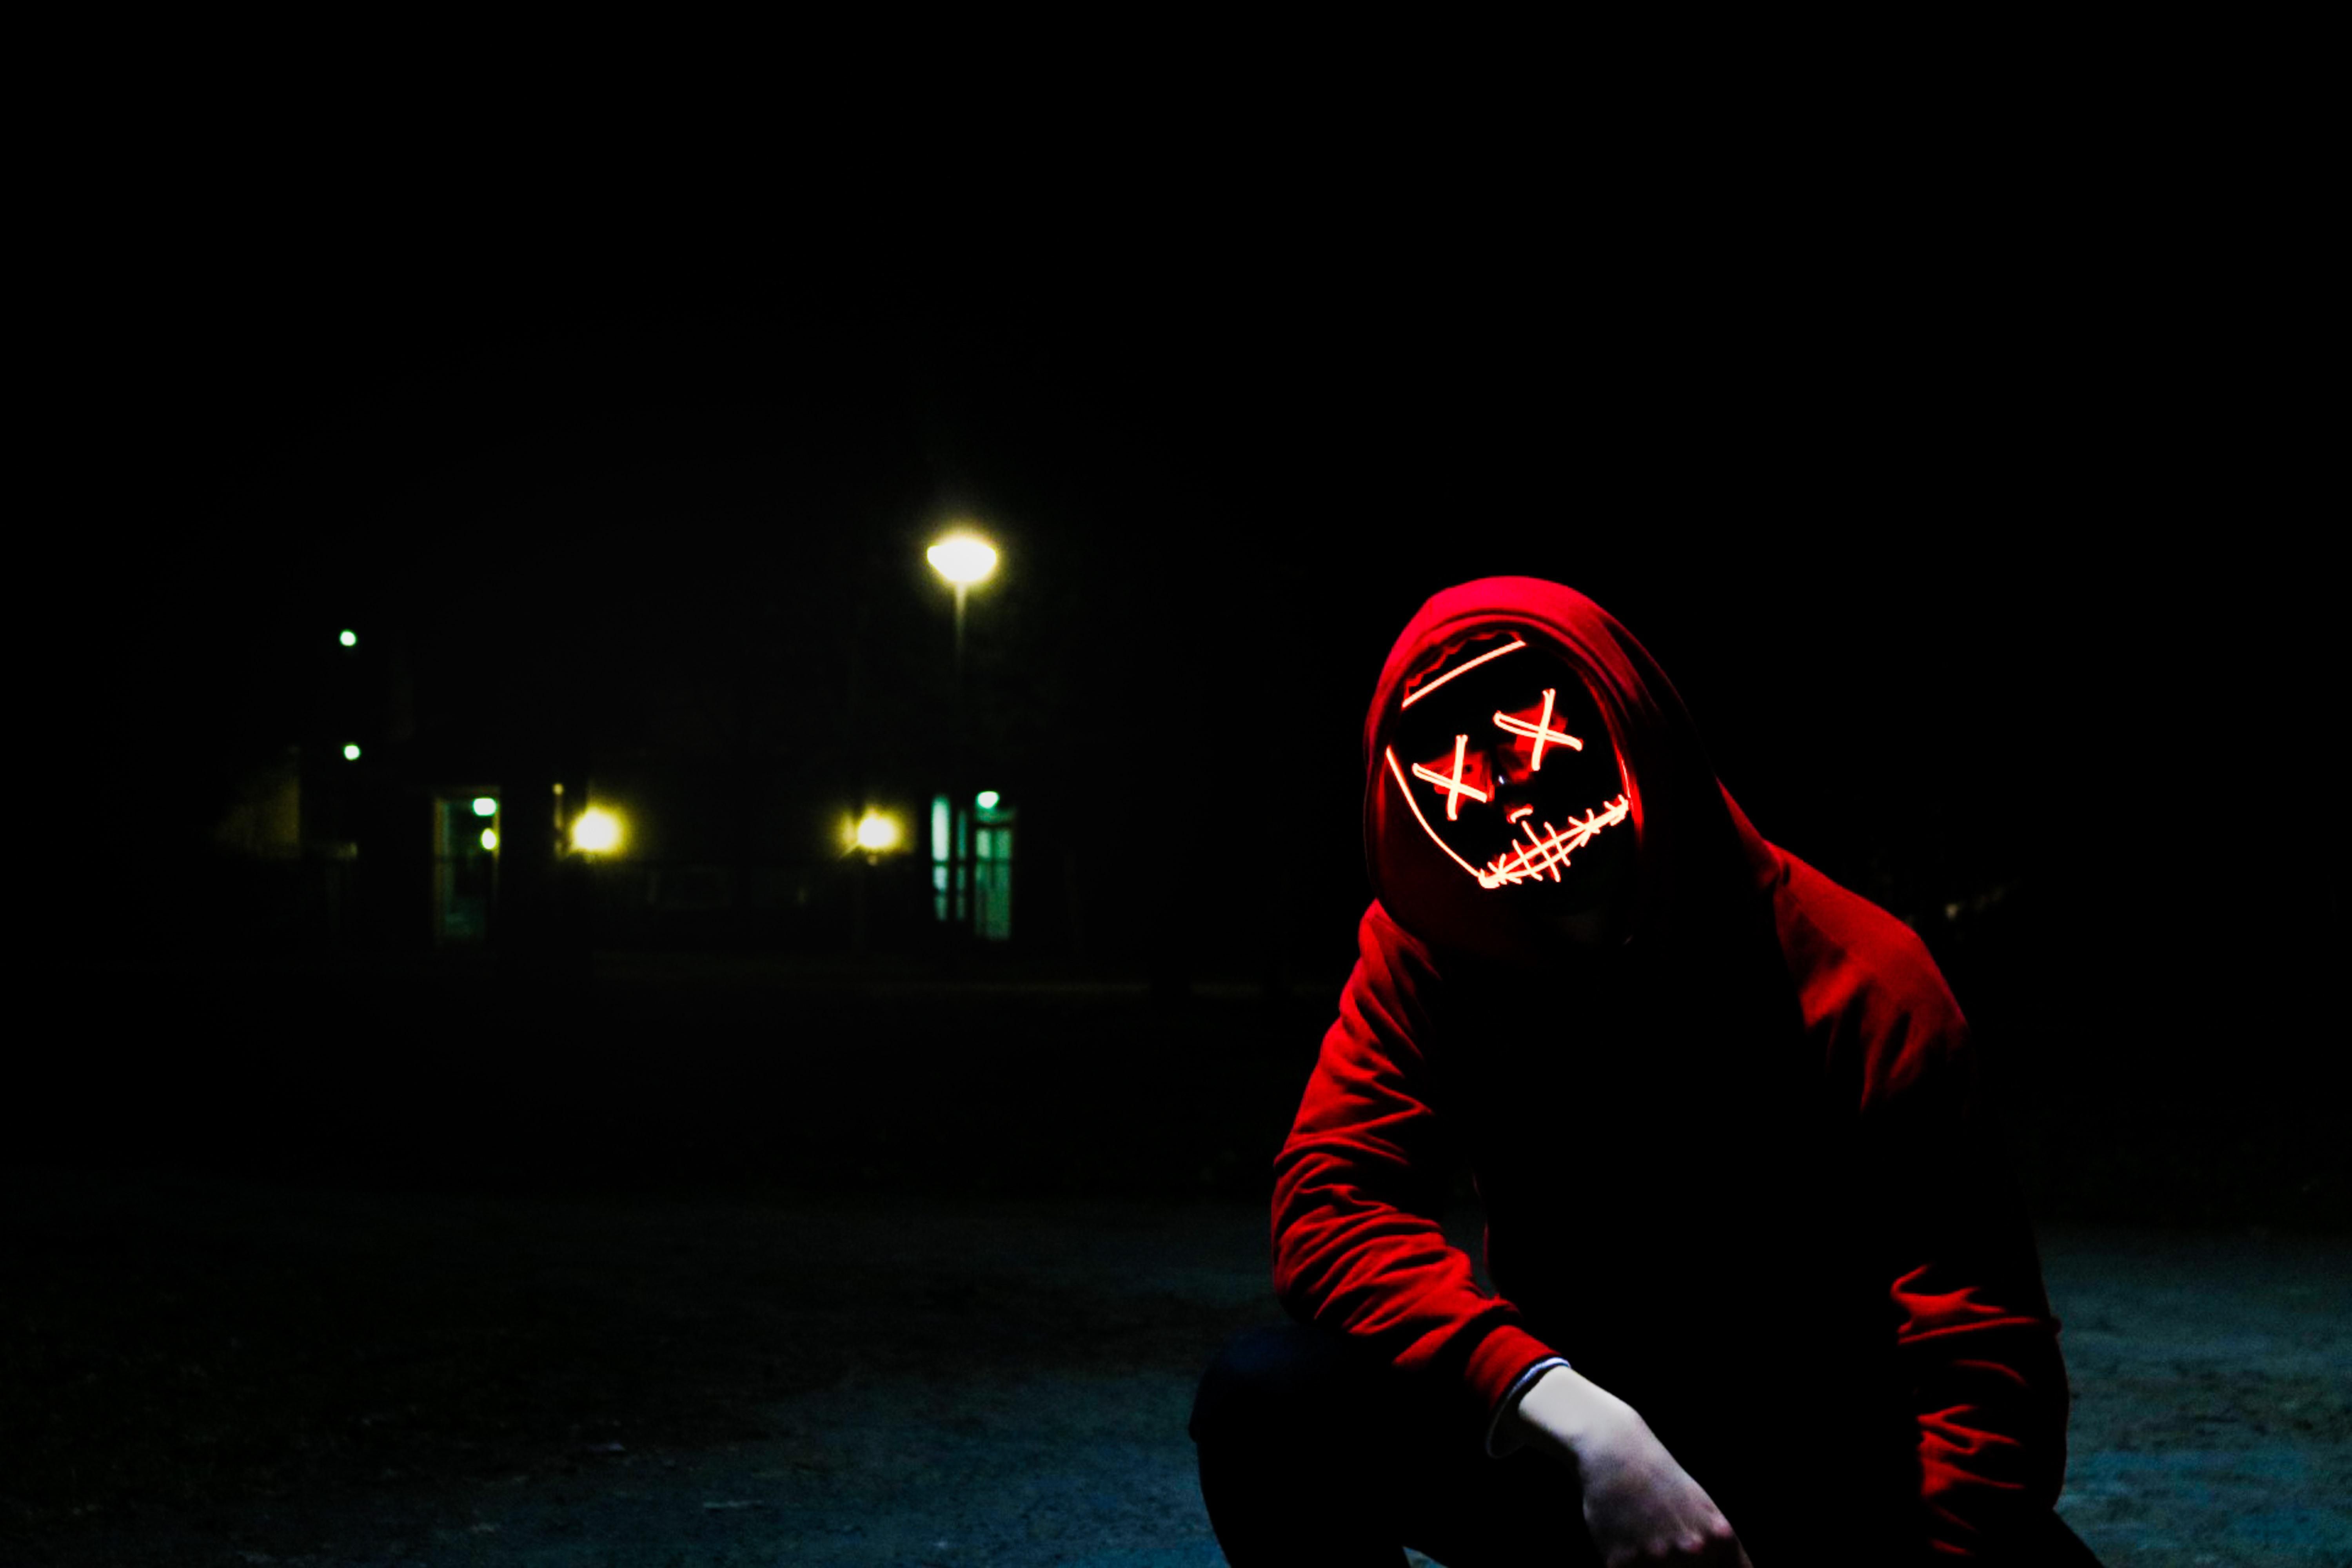 Piros pulóveres hacker guggol éjszaka az utcán, egy pirosan világító maszk van az arcán